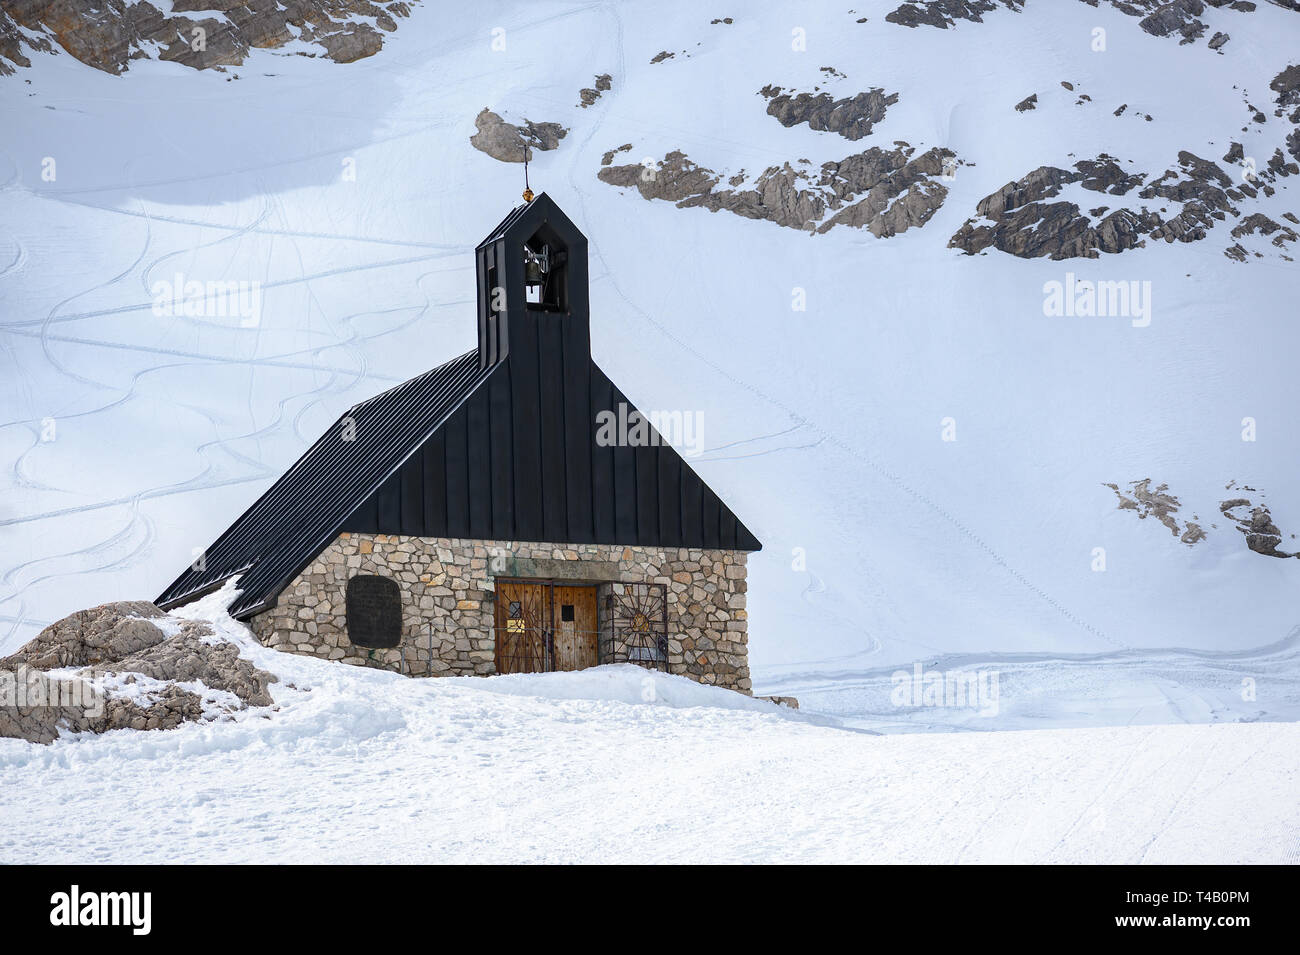 Cappella di Maria, la chiesa sul massiccio dello Zugspitze, la montagna più alta della Germania nella coperta di neve Alpi Bavaresi vicino a Garmisch Patenkirchen, spazio di copia Foto Stock